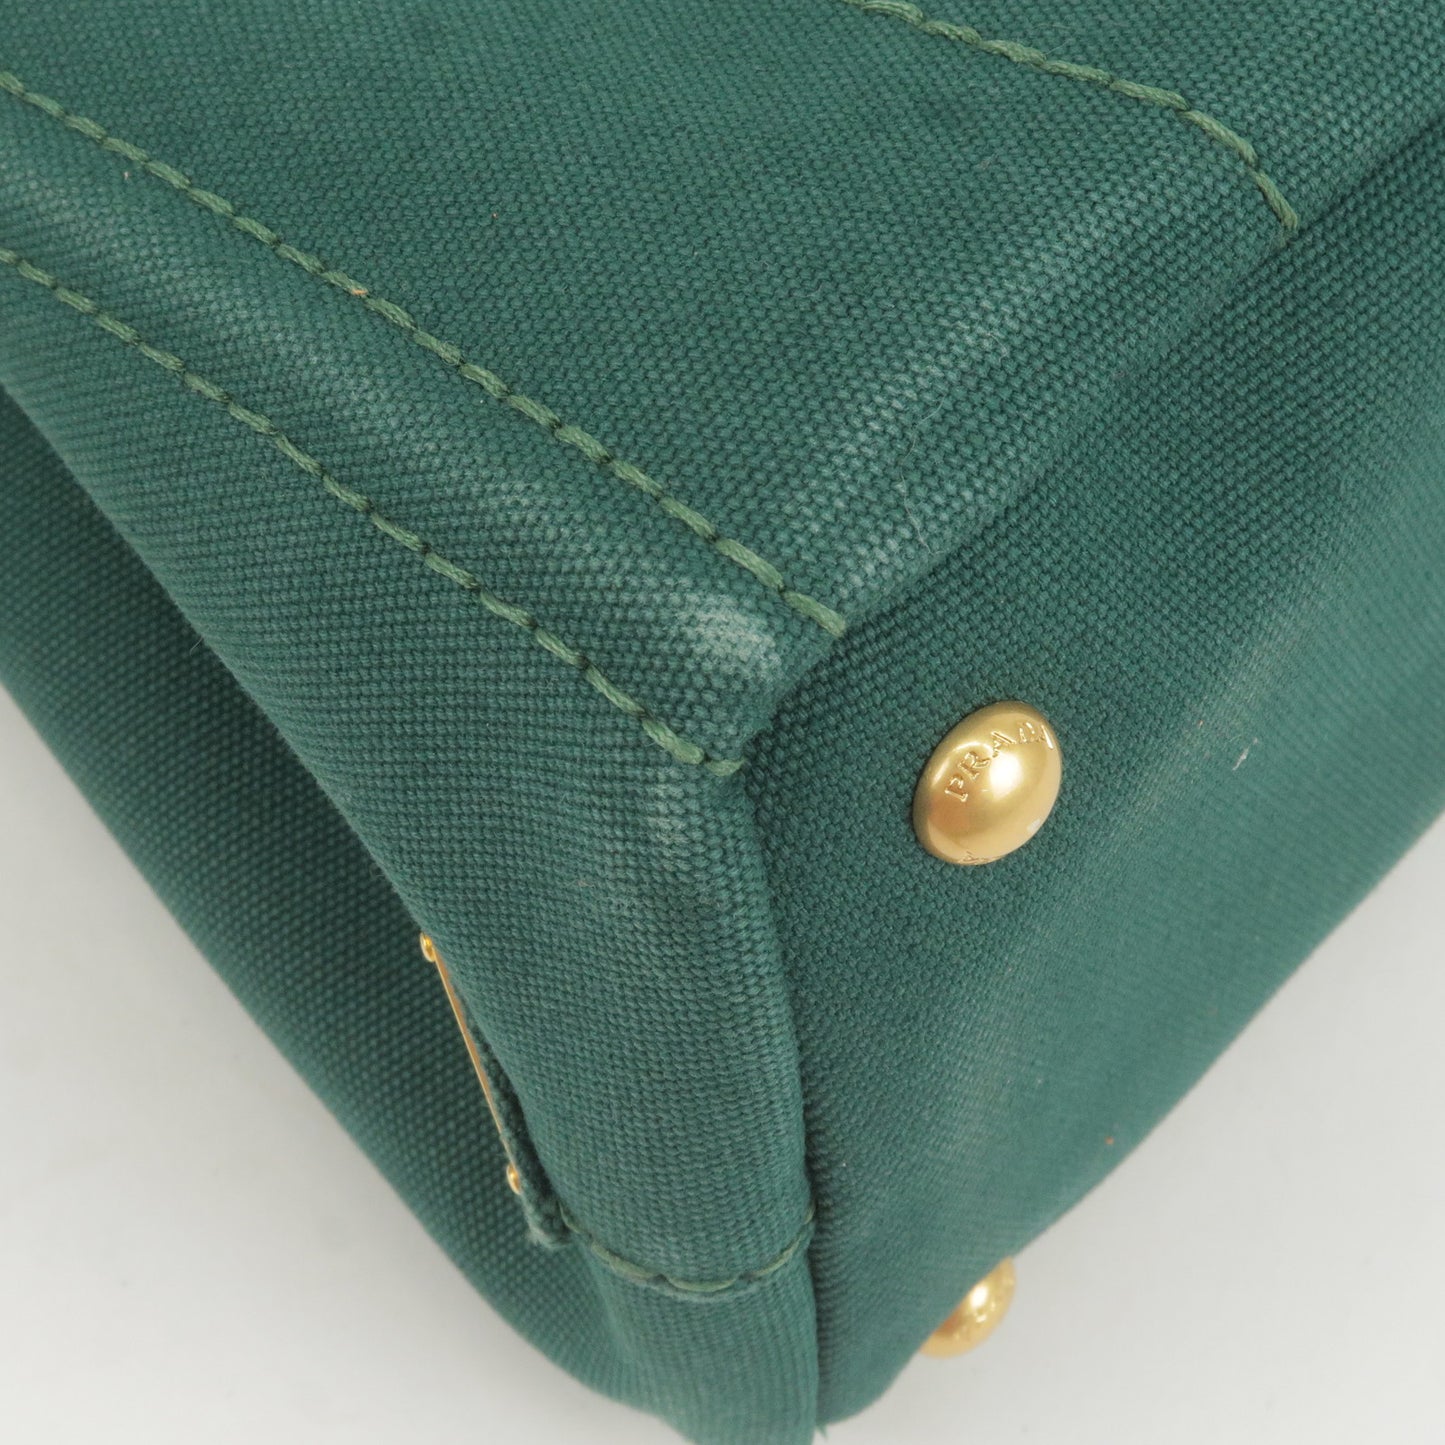 PRADA Canapa Mini Canvas 2Way Bag Shoulder Bag Green B2439G